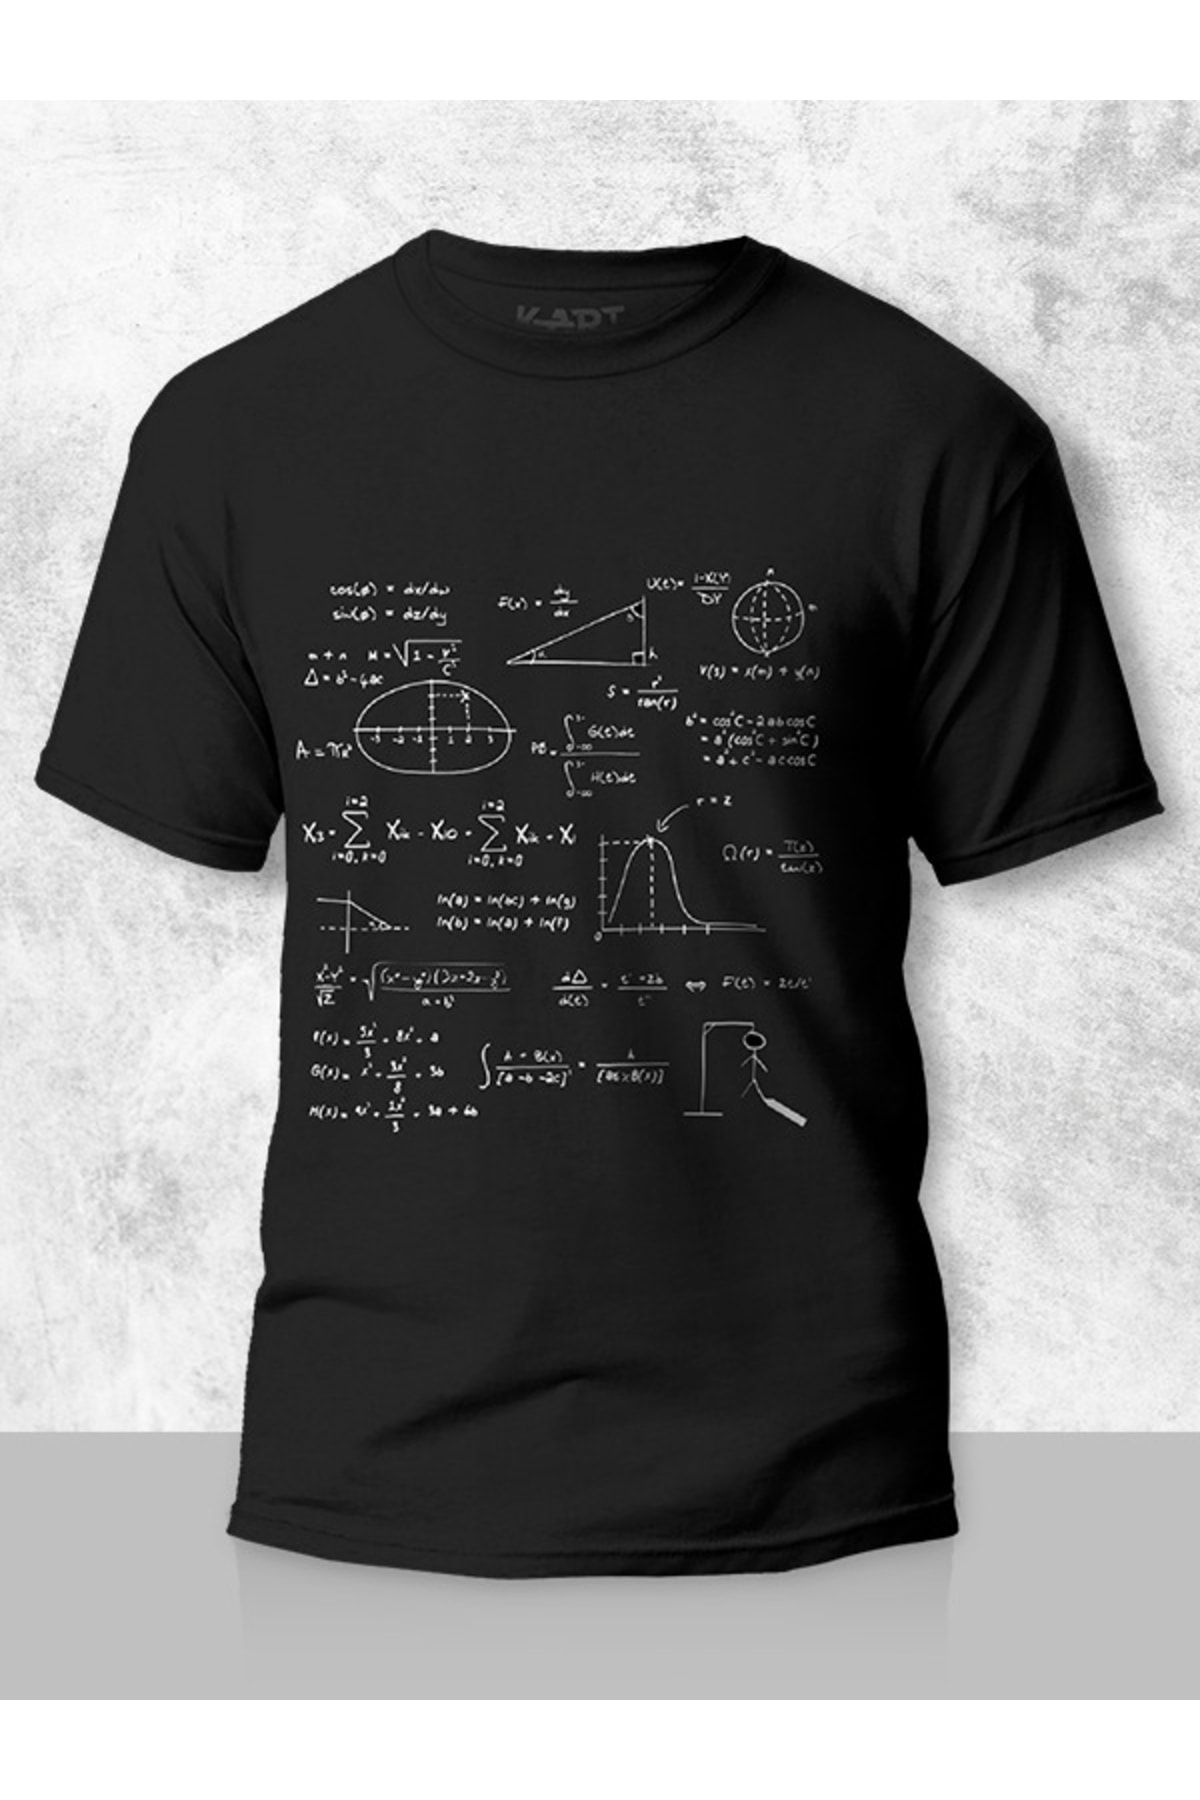 Tişört Baskı Baskılı Tişört, Matematik Formül Tasarımlı Unisex Kişiye Özel Tişört Siyah